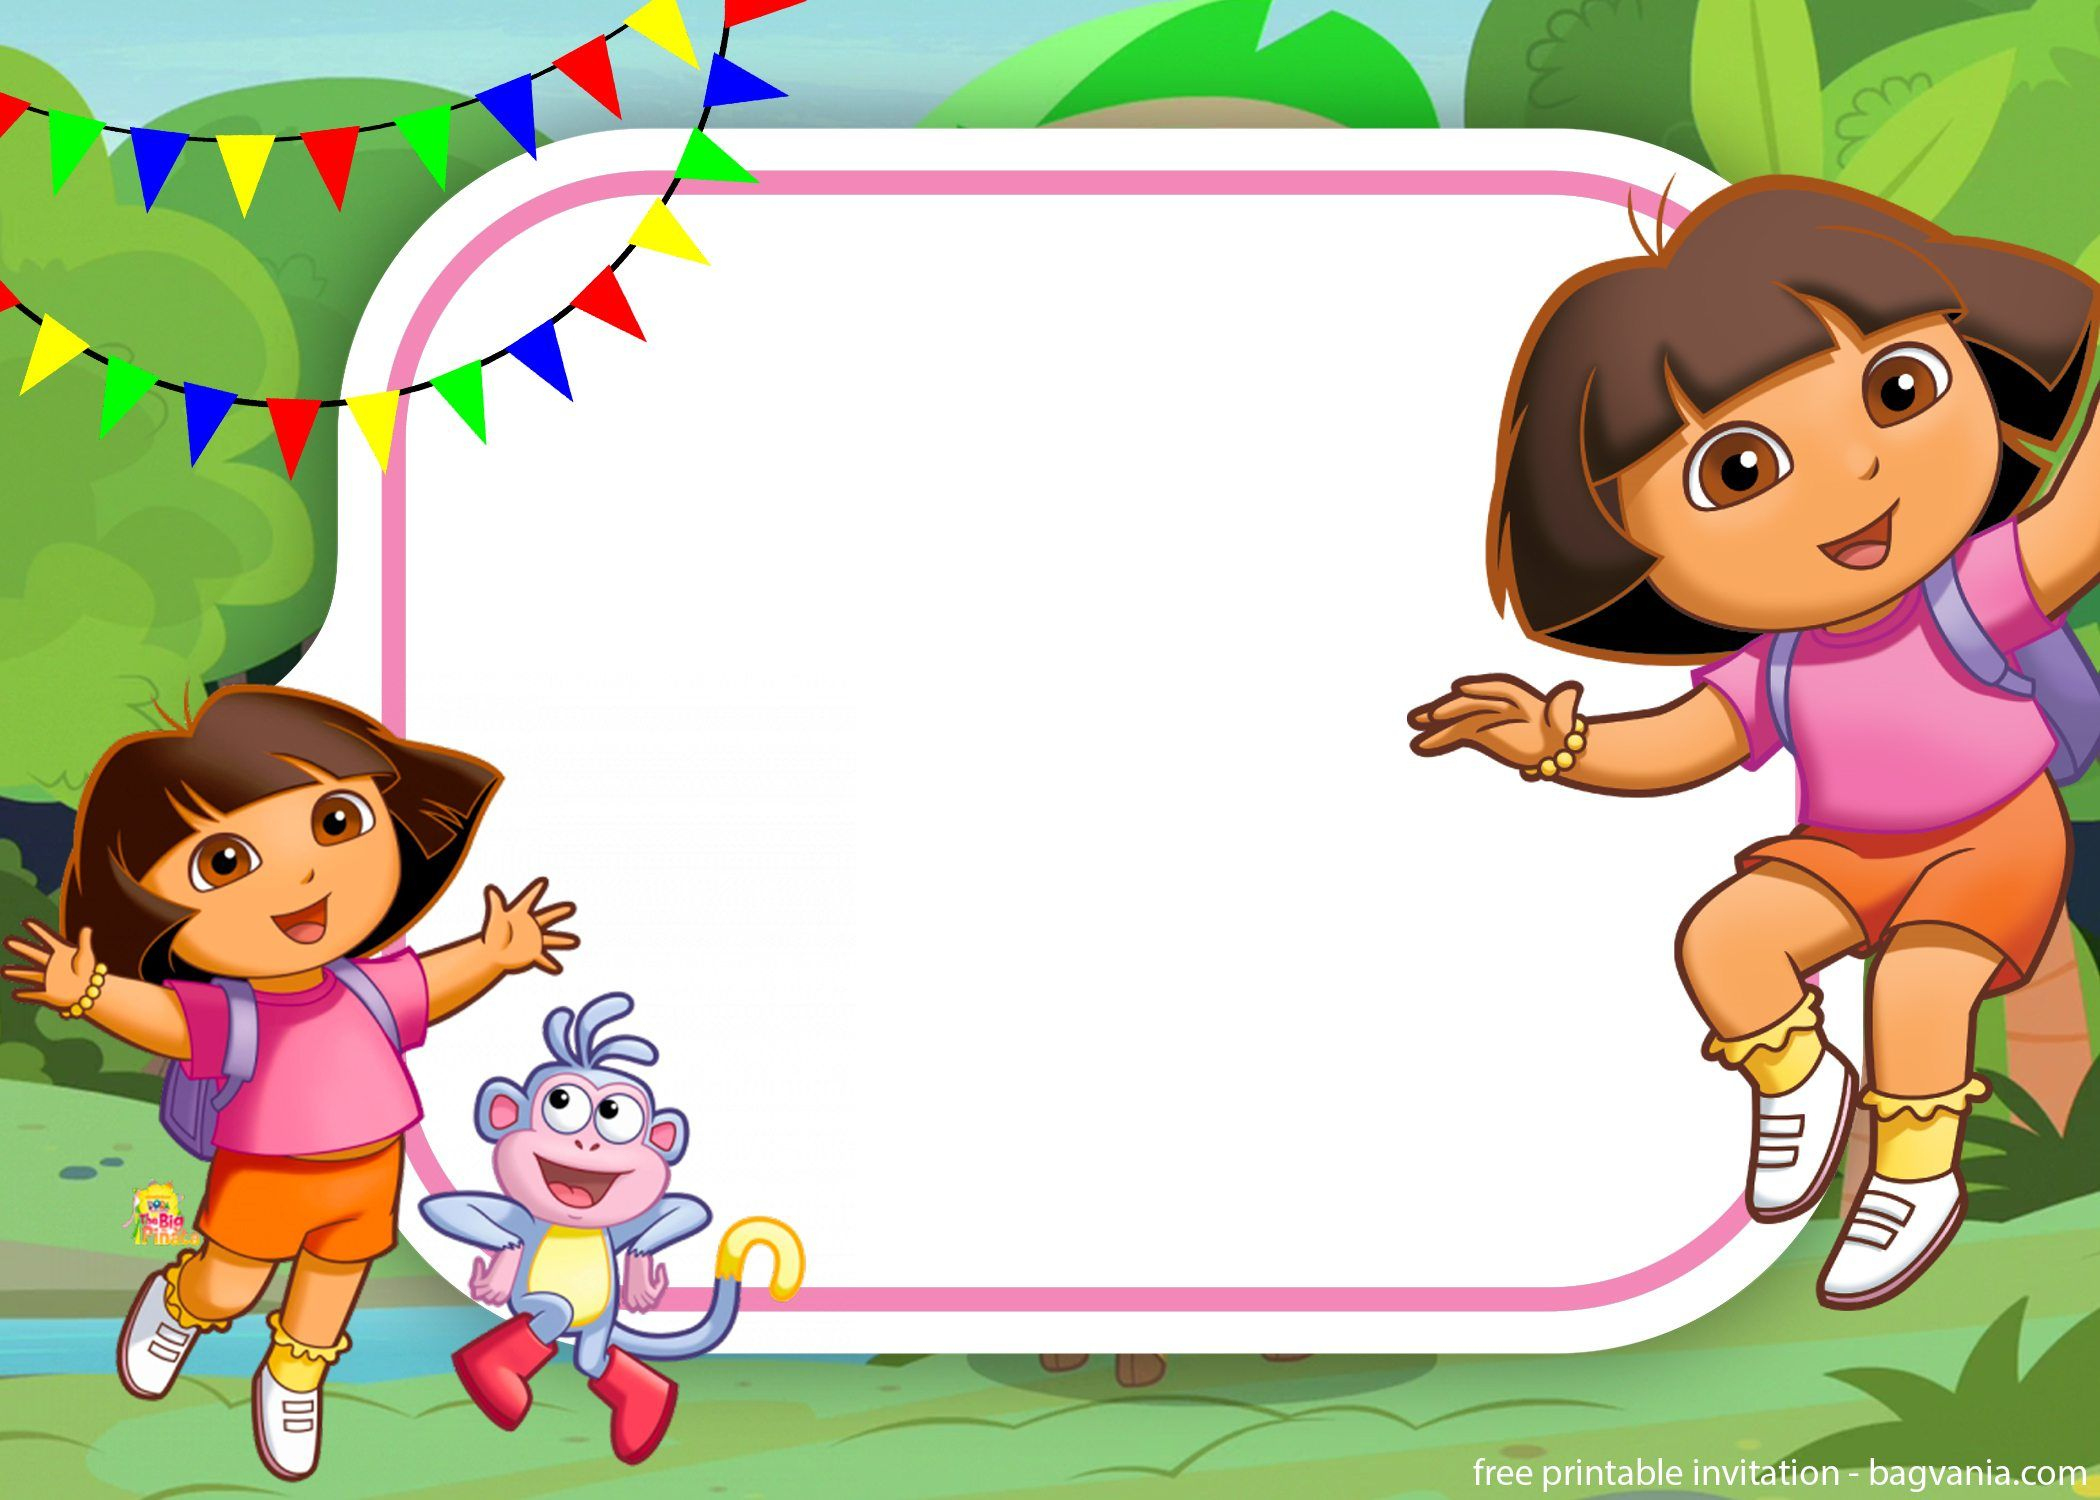 Free Dora The Explorer Invitation For Your Little Explorers | Free in Dora The Explorer Free Printable Invitations